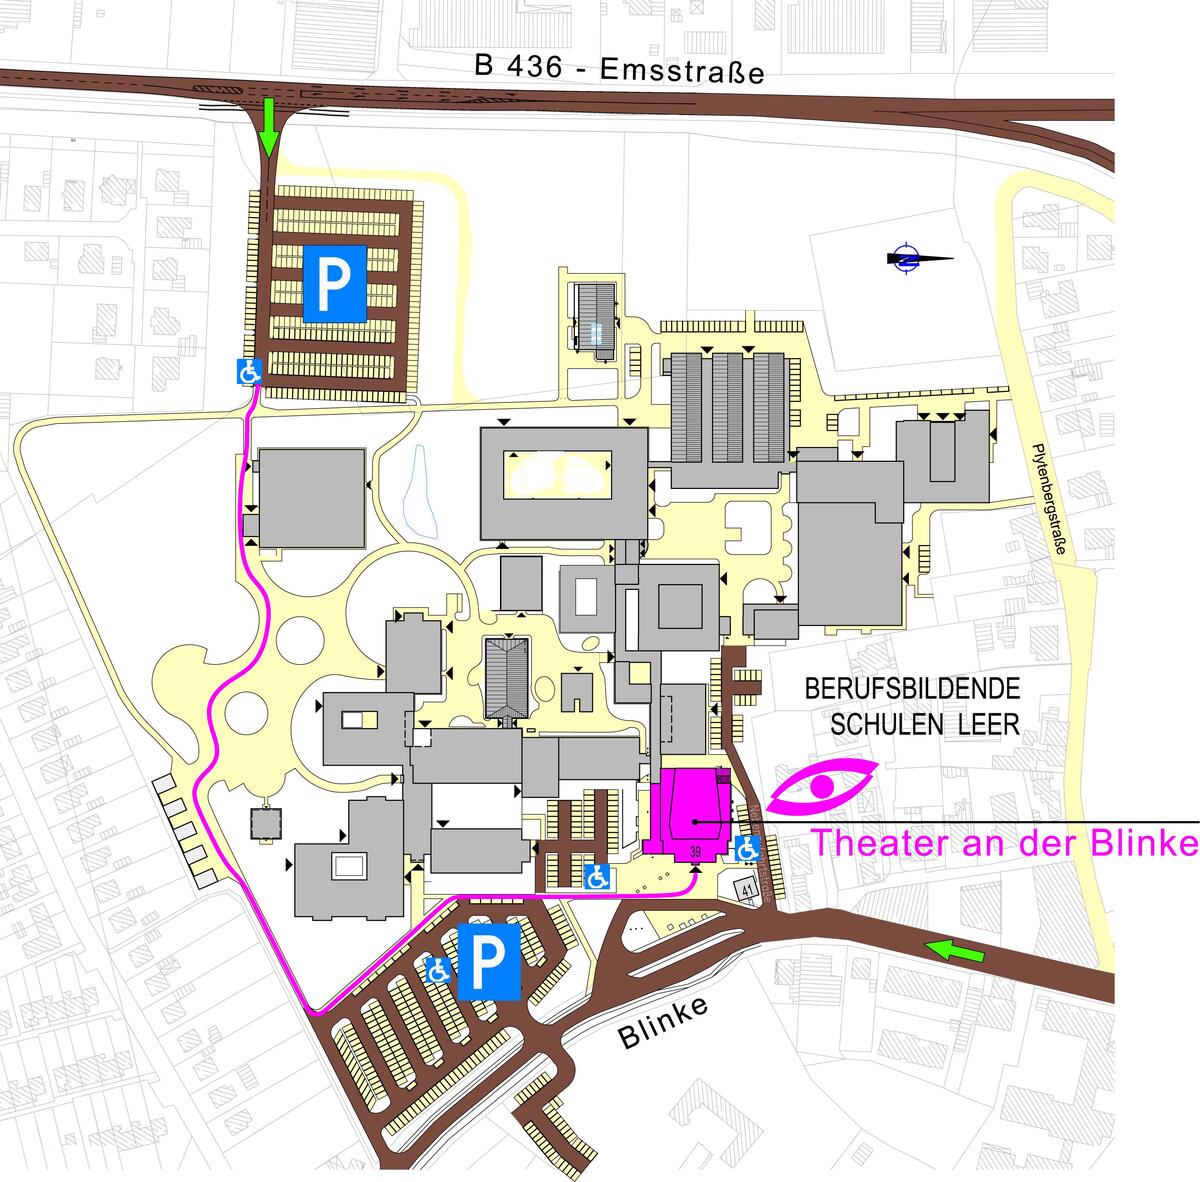 Das Bild zeigt eine Übersicht über die Lage des Theaters und der Parkplätze.